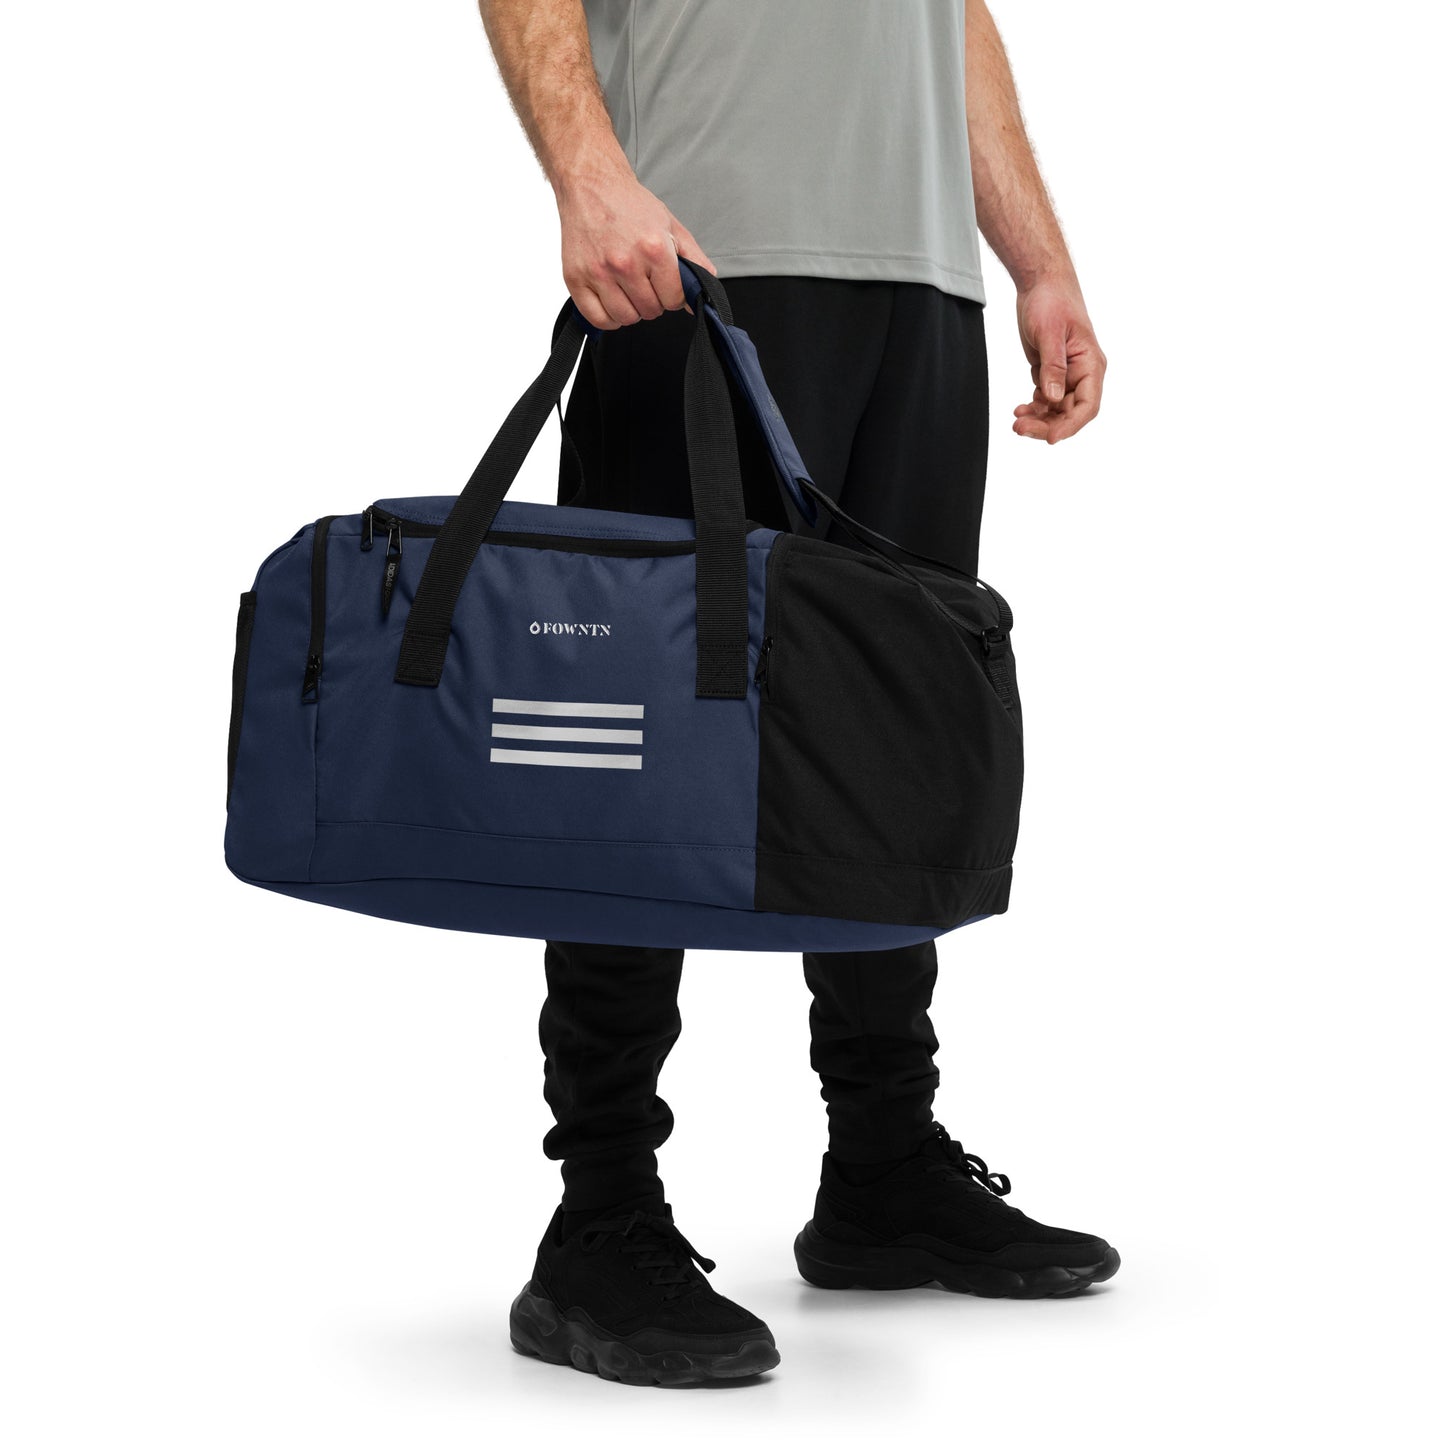 Adidas FOWNTN Duffle Bag